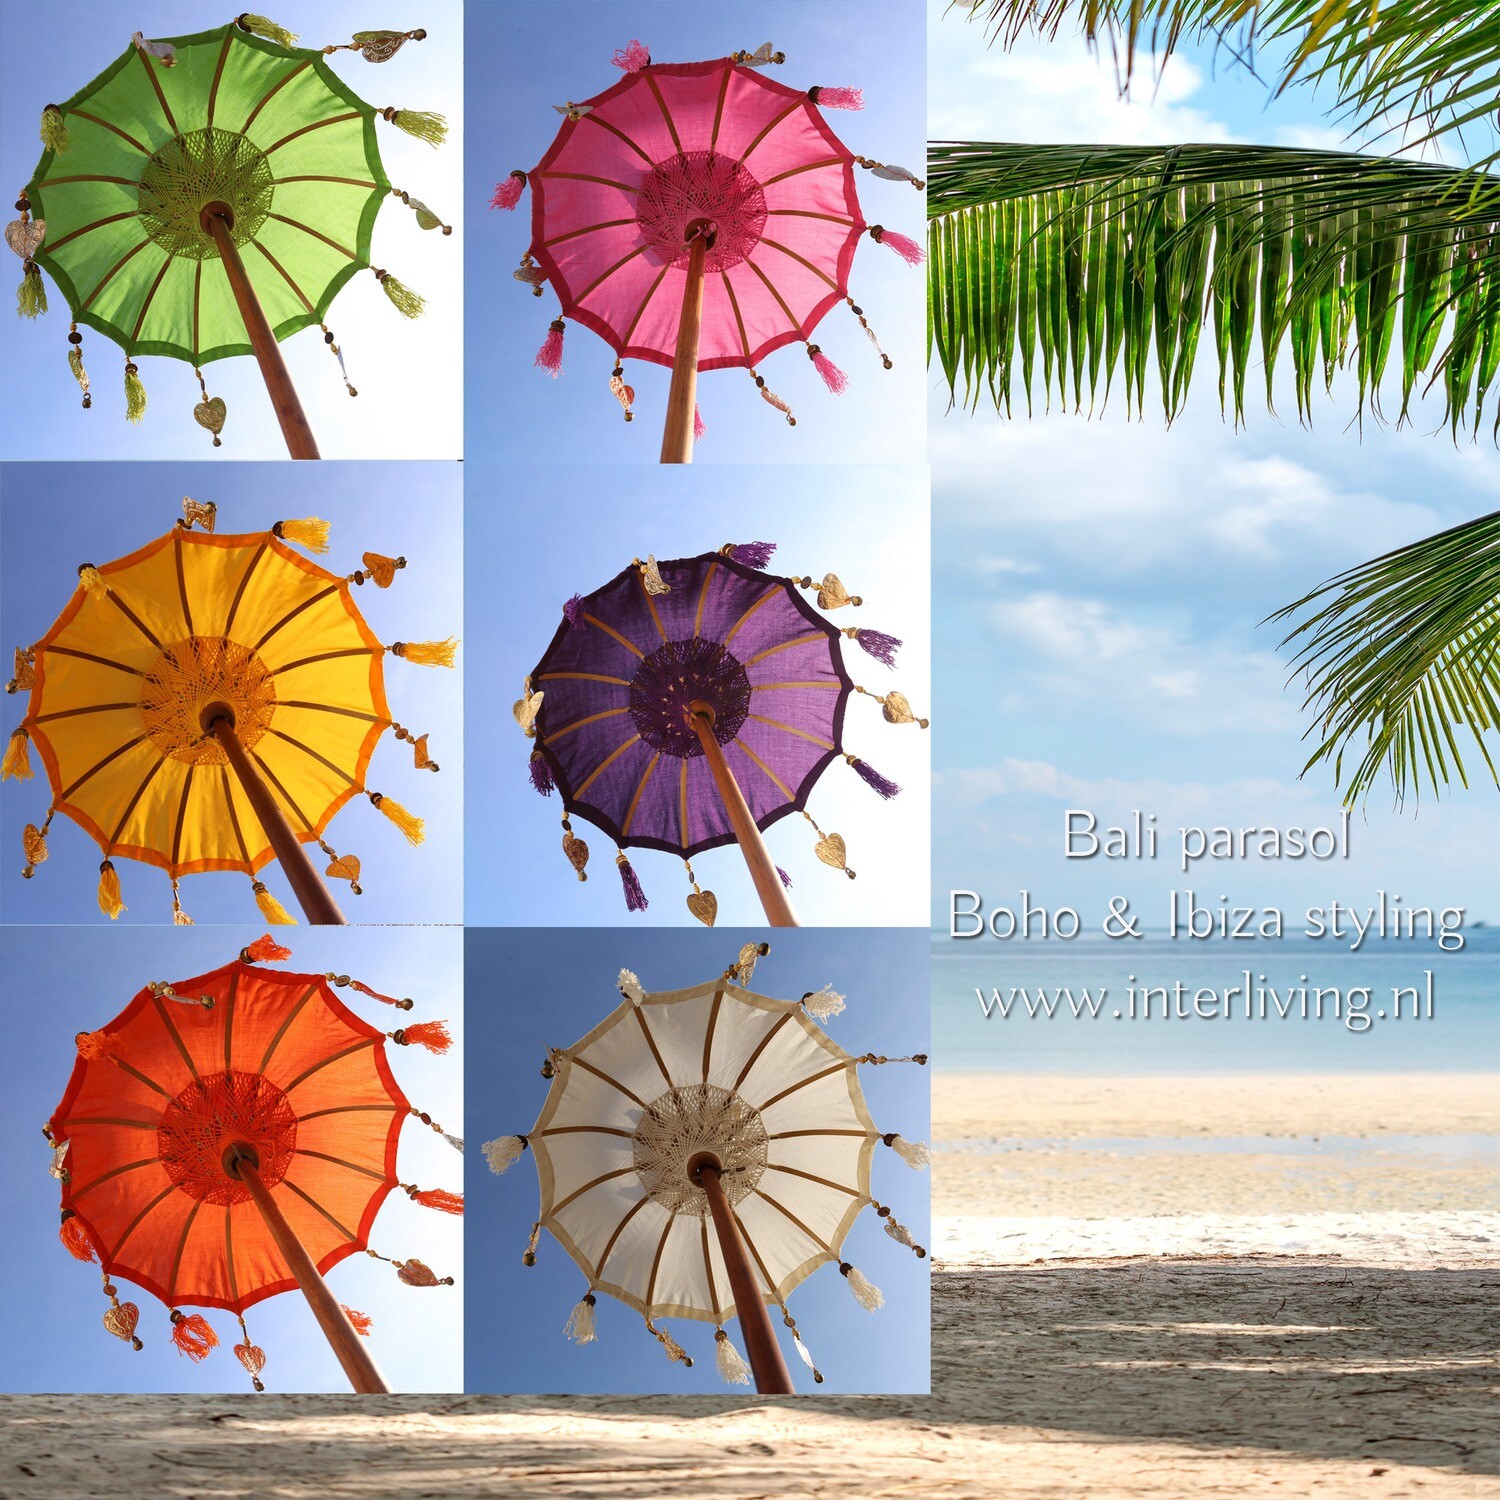 Twee graden storting Nadenkend tafelparasol uit Bali 50 cm - Tedung - versierde kleine Balinese parasols  met kwastjes en hangers in de kleuren wit / geel / groen / roze / paars en  oranje - handgemaakt met teakhout voet